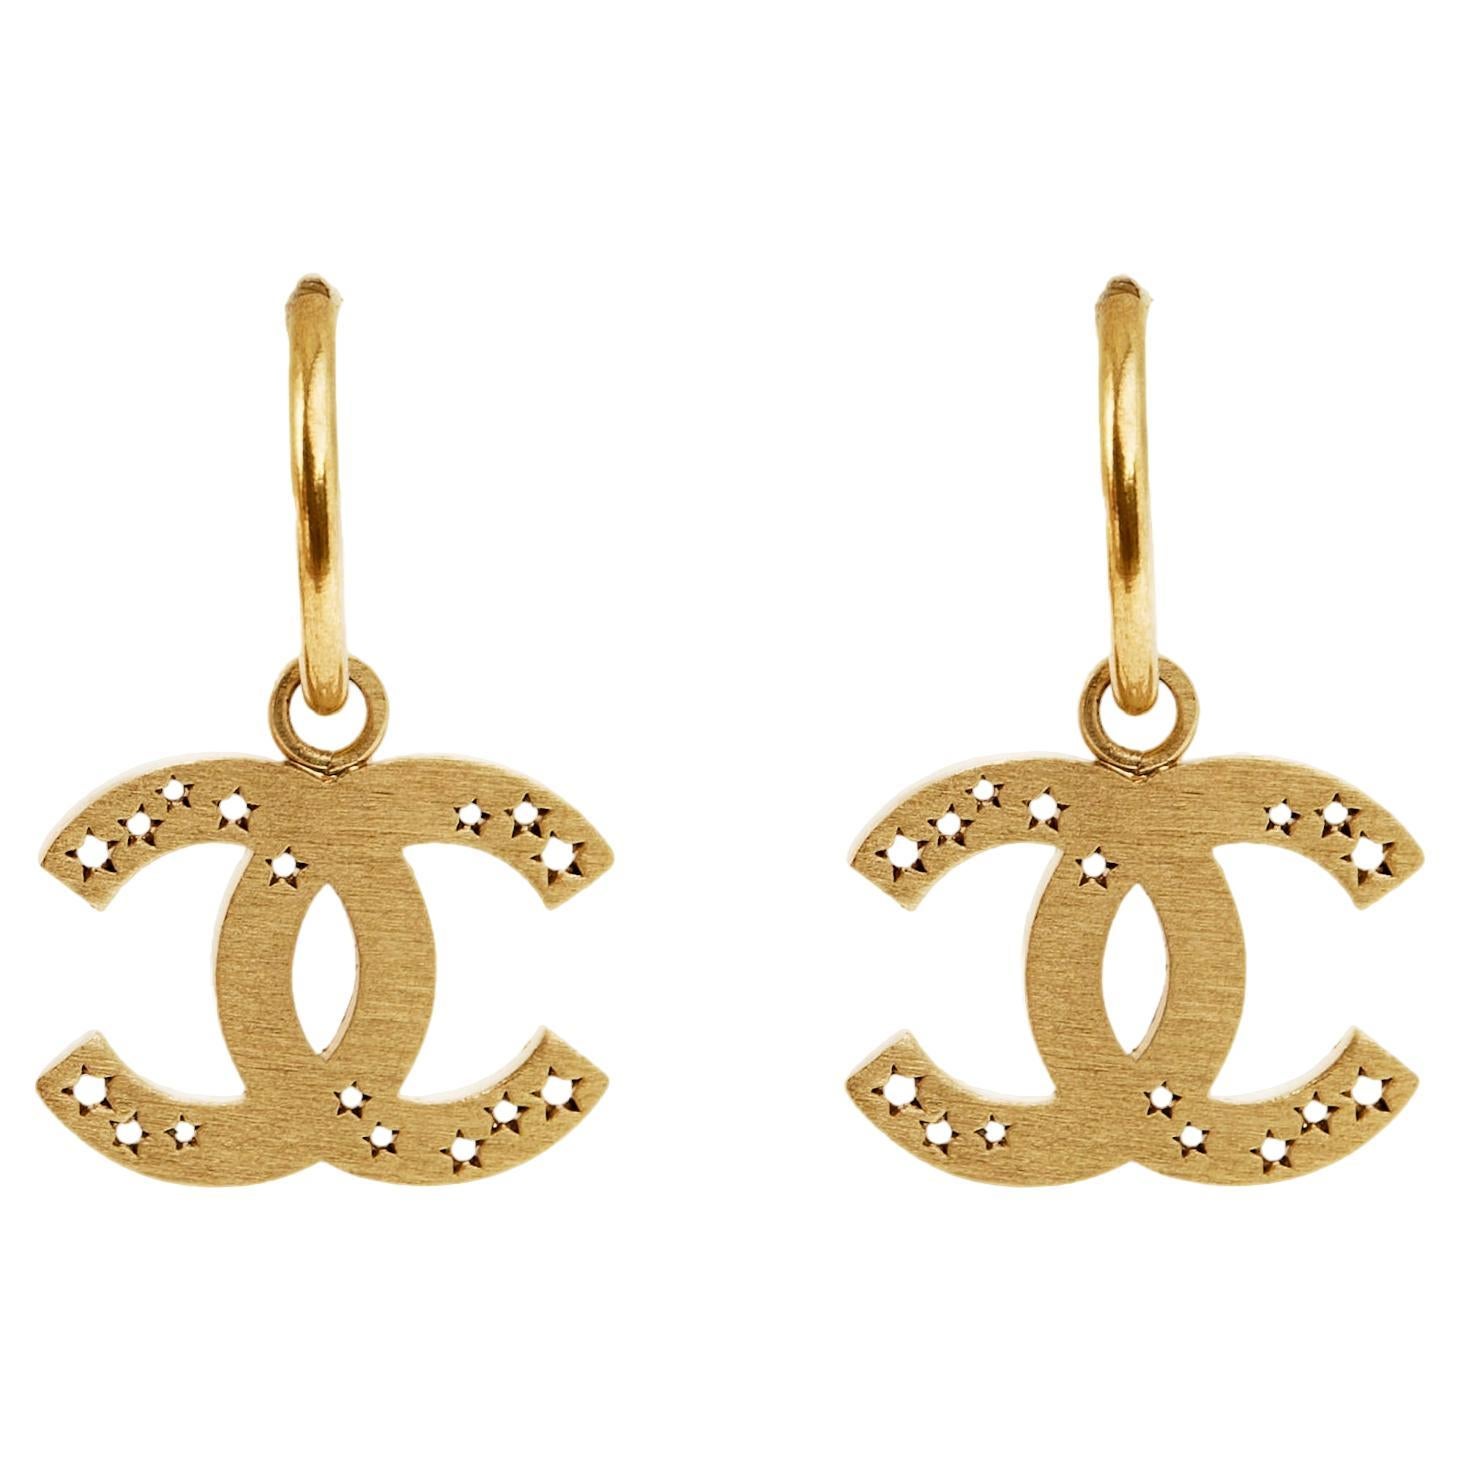 SS2004 Chanel Earrings Studs Hoops Golden open stars CC For Sale